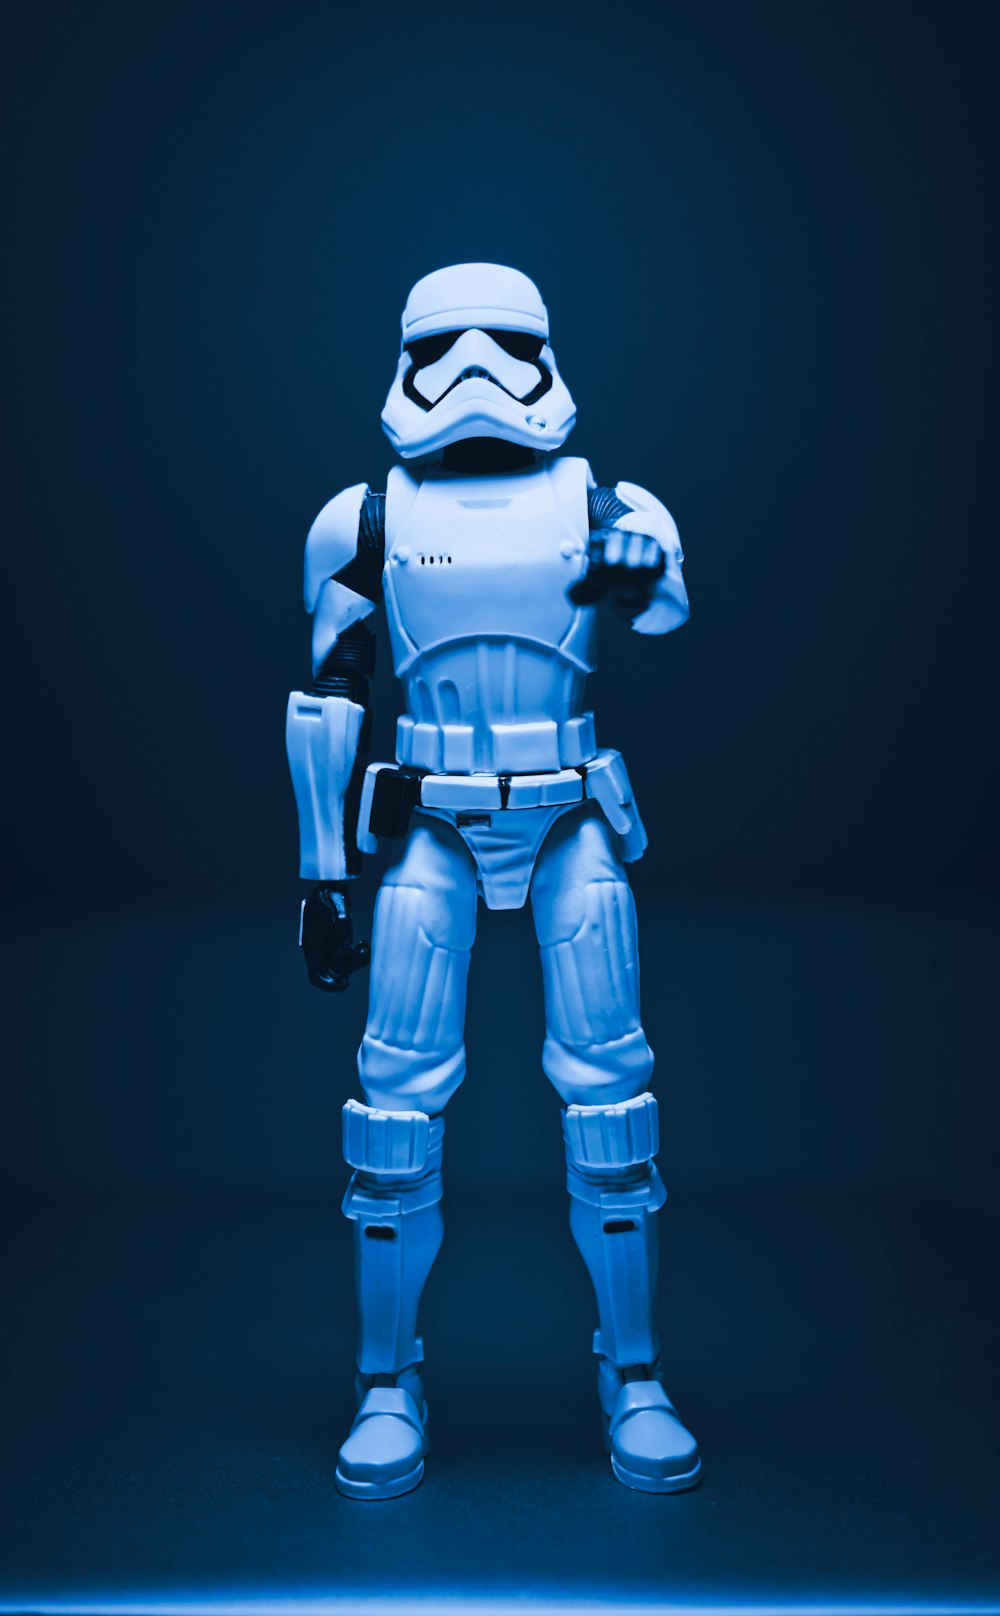 Eine Star Wars-Actionfigur steht in einem dunklen Raum